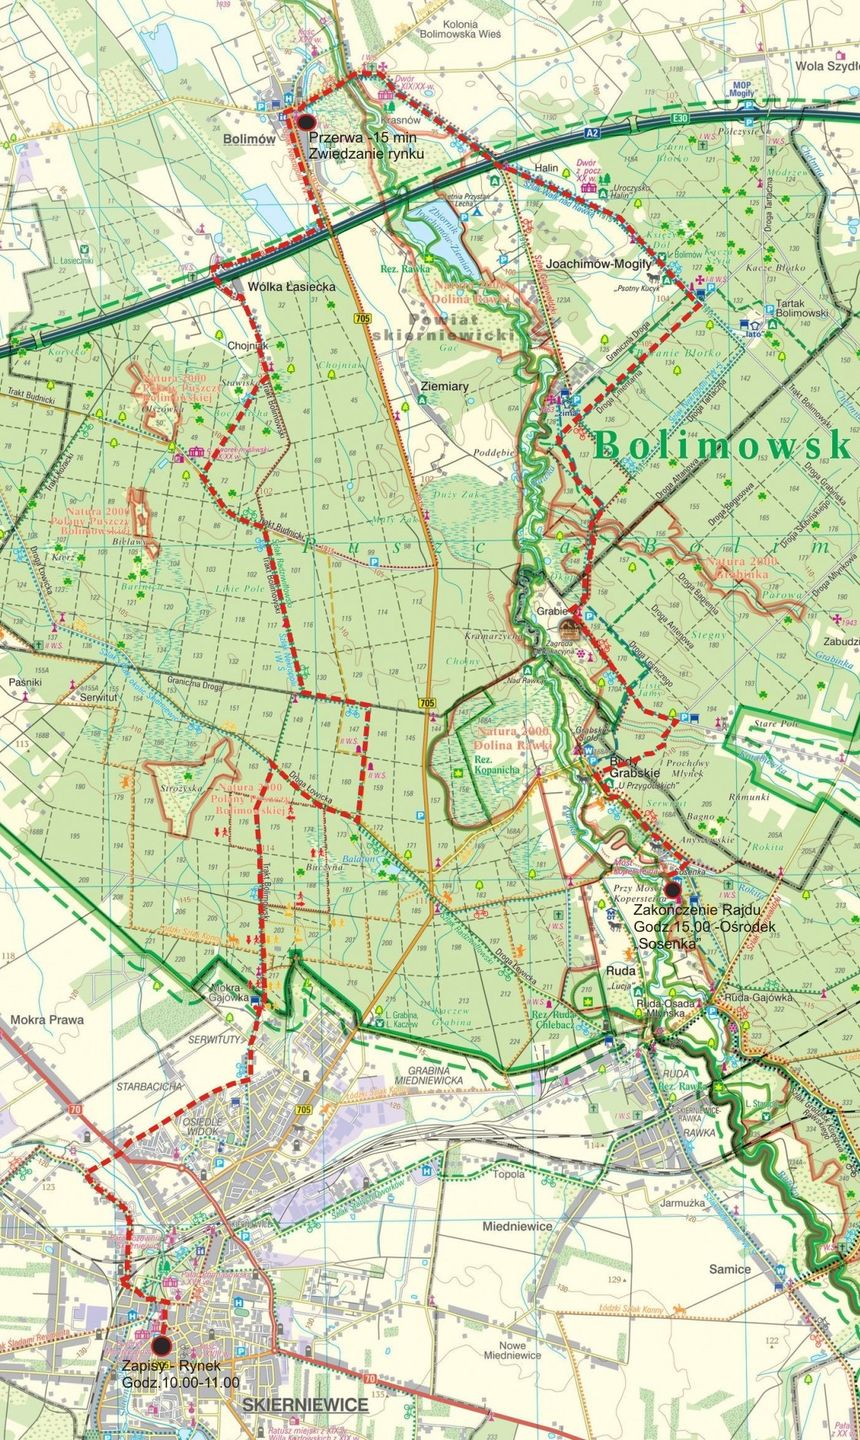 Trasa na rajd 2018 BPK mapa wersja A2